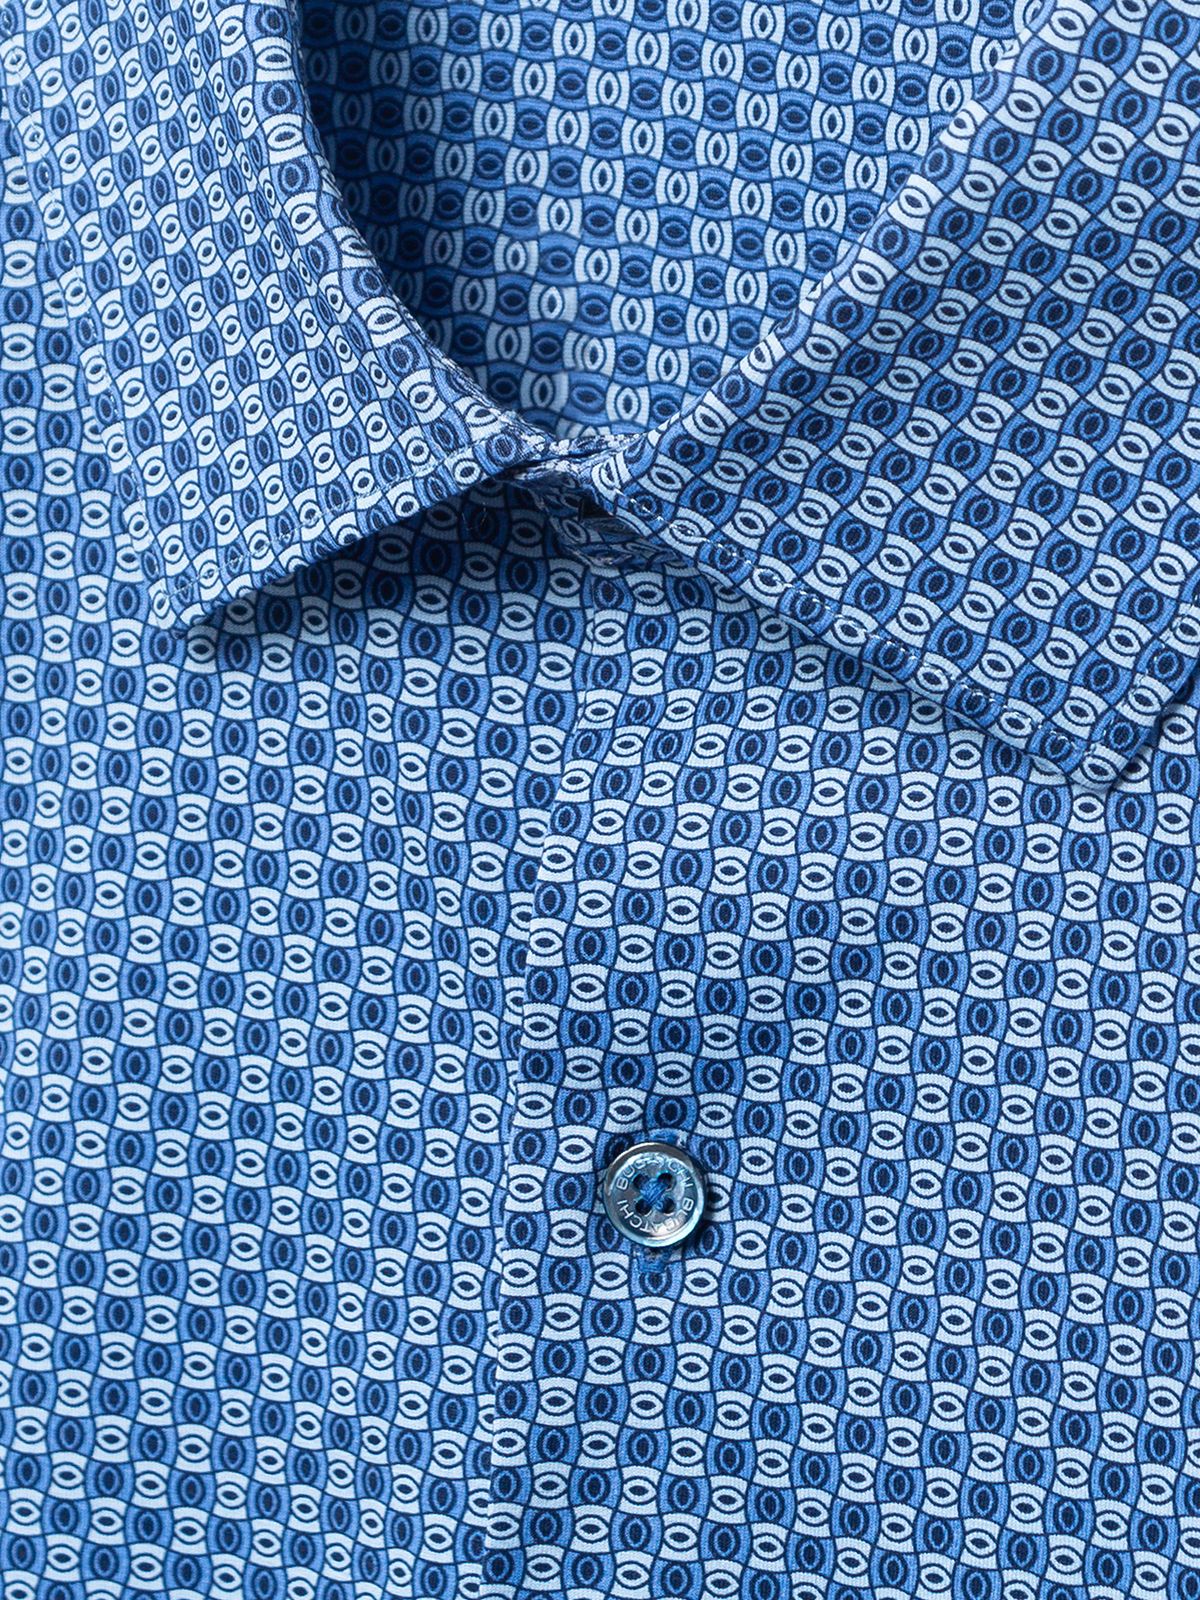 OoohCotton Tech Long Sleeve Shirt - Classic Blue